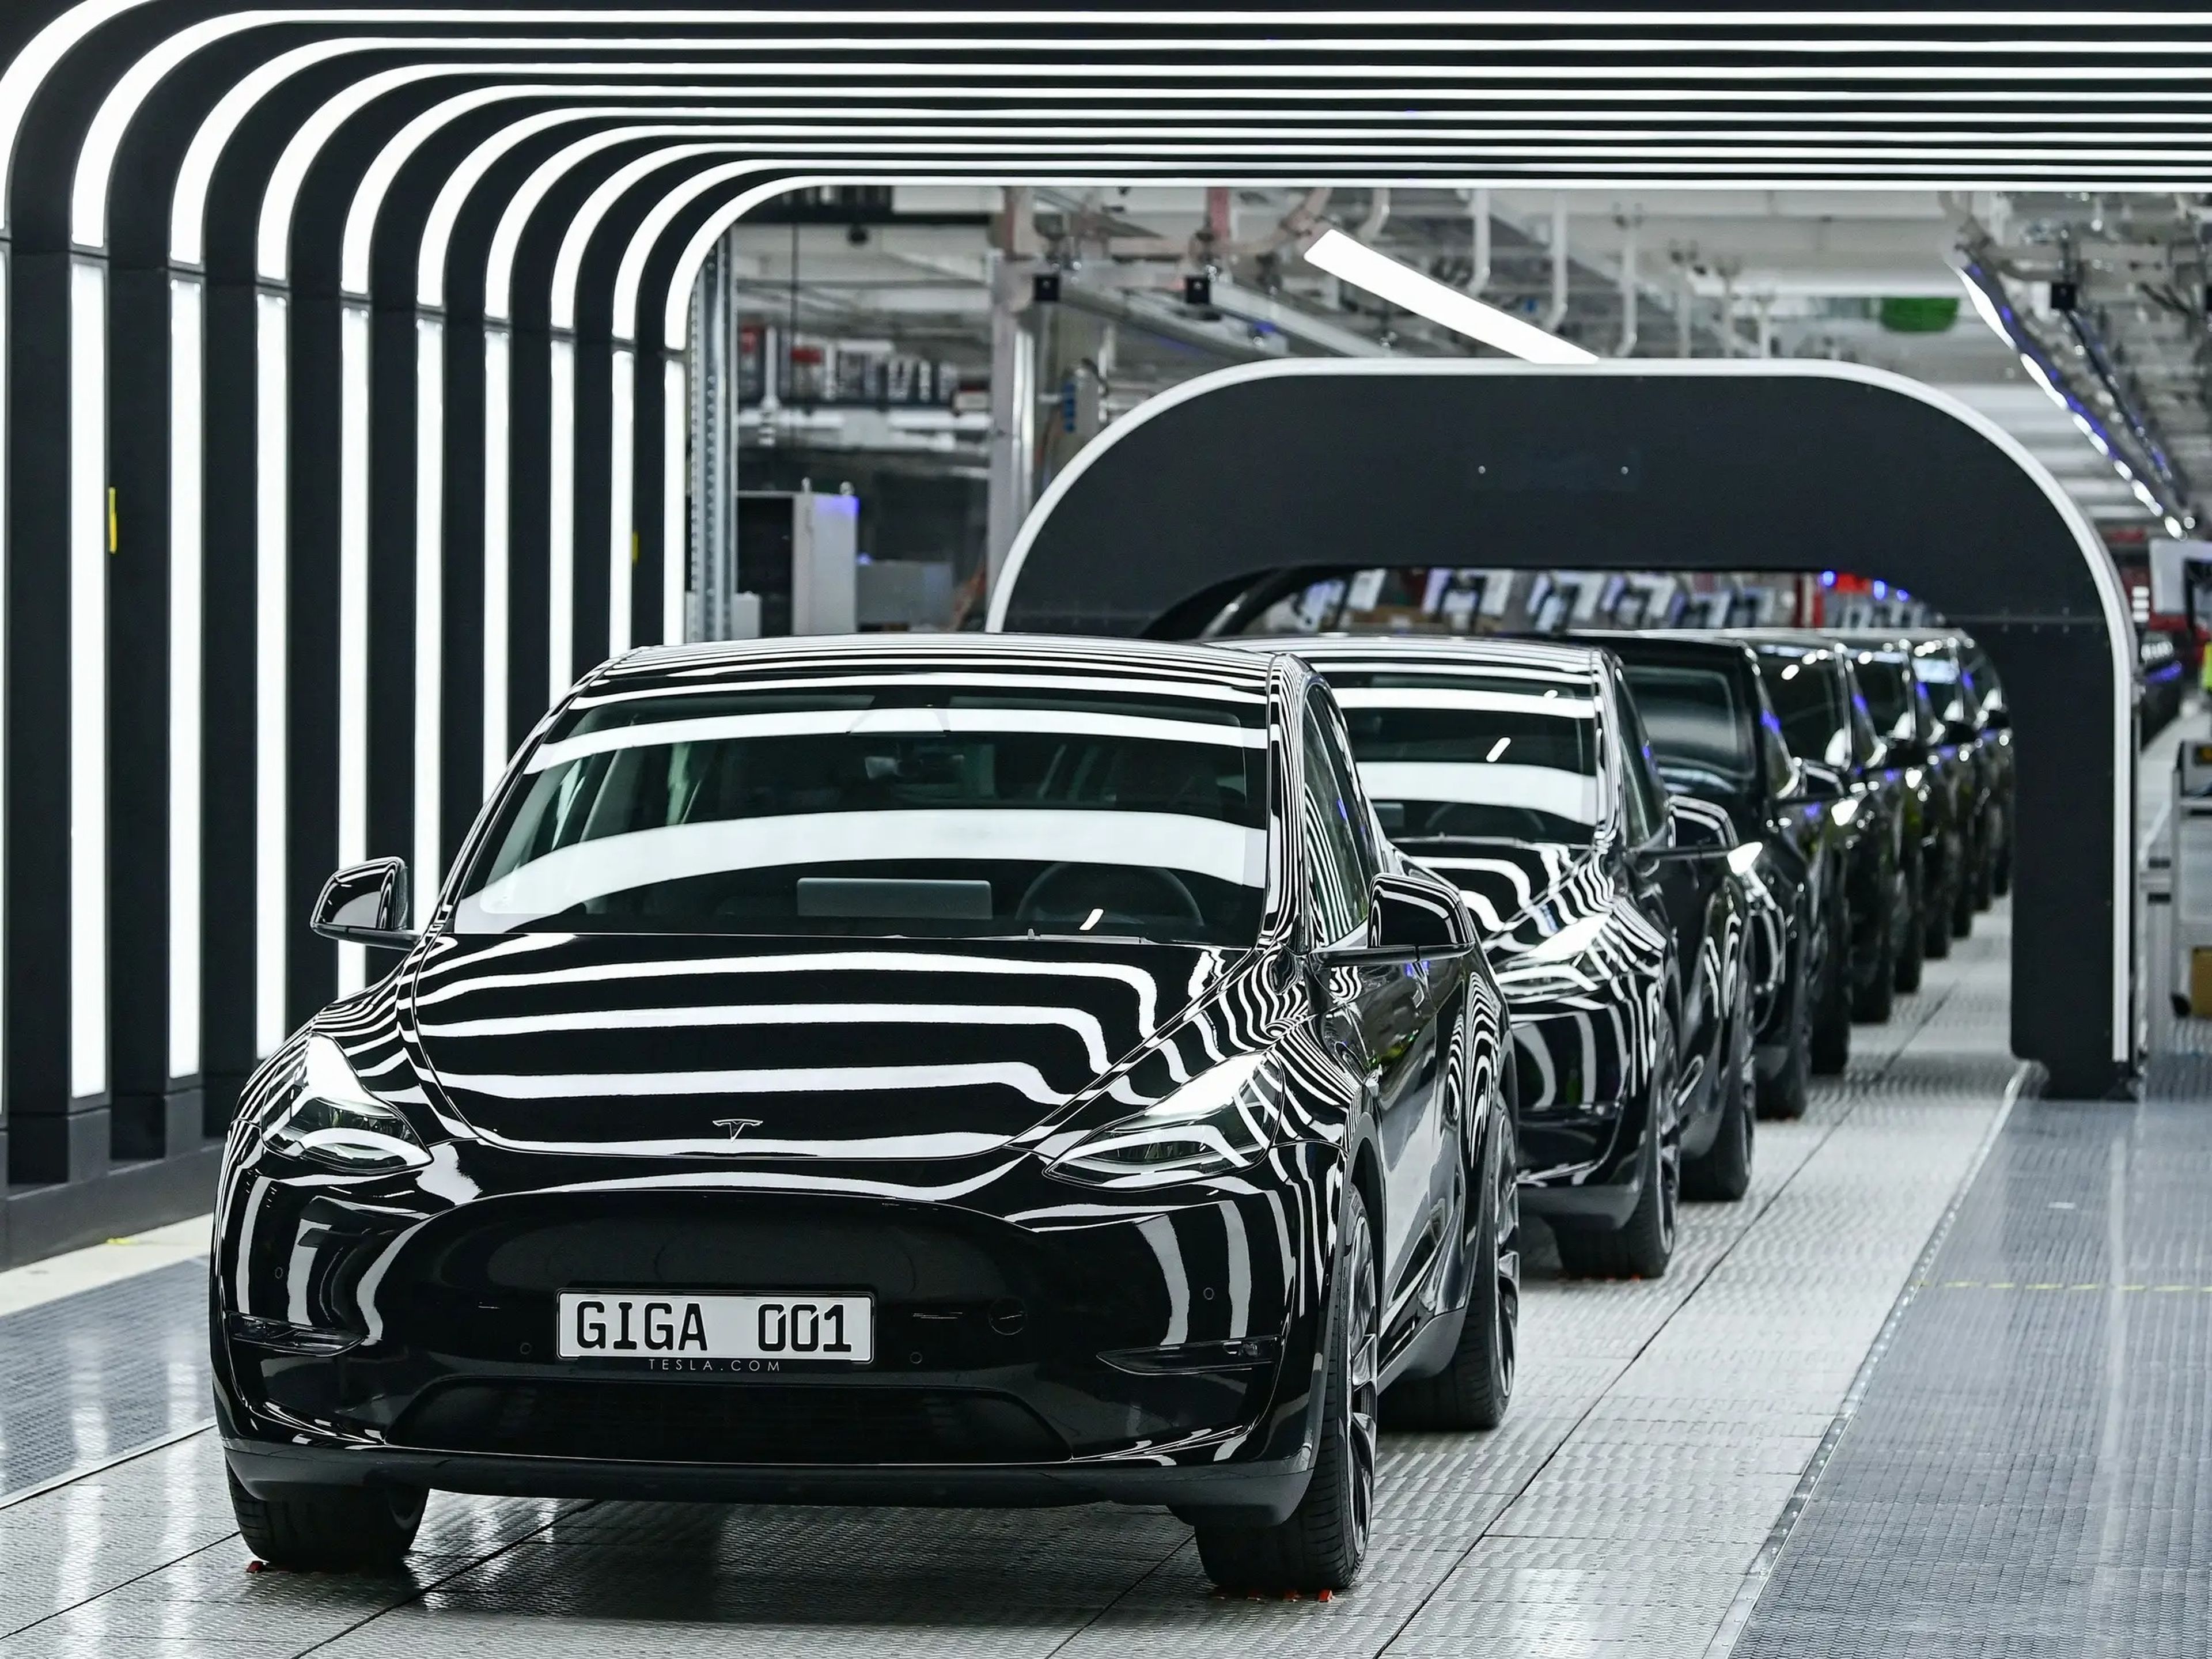 Una fila de coches Tesla sale de una fábrica rodeada de luces.